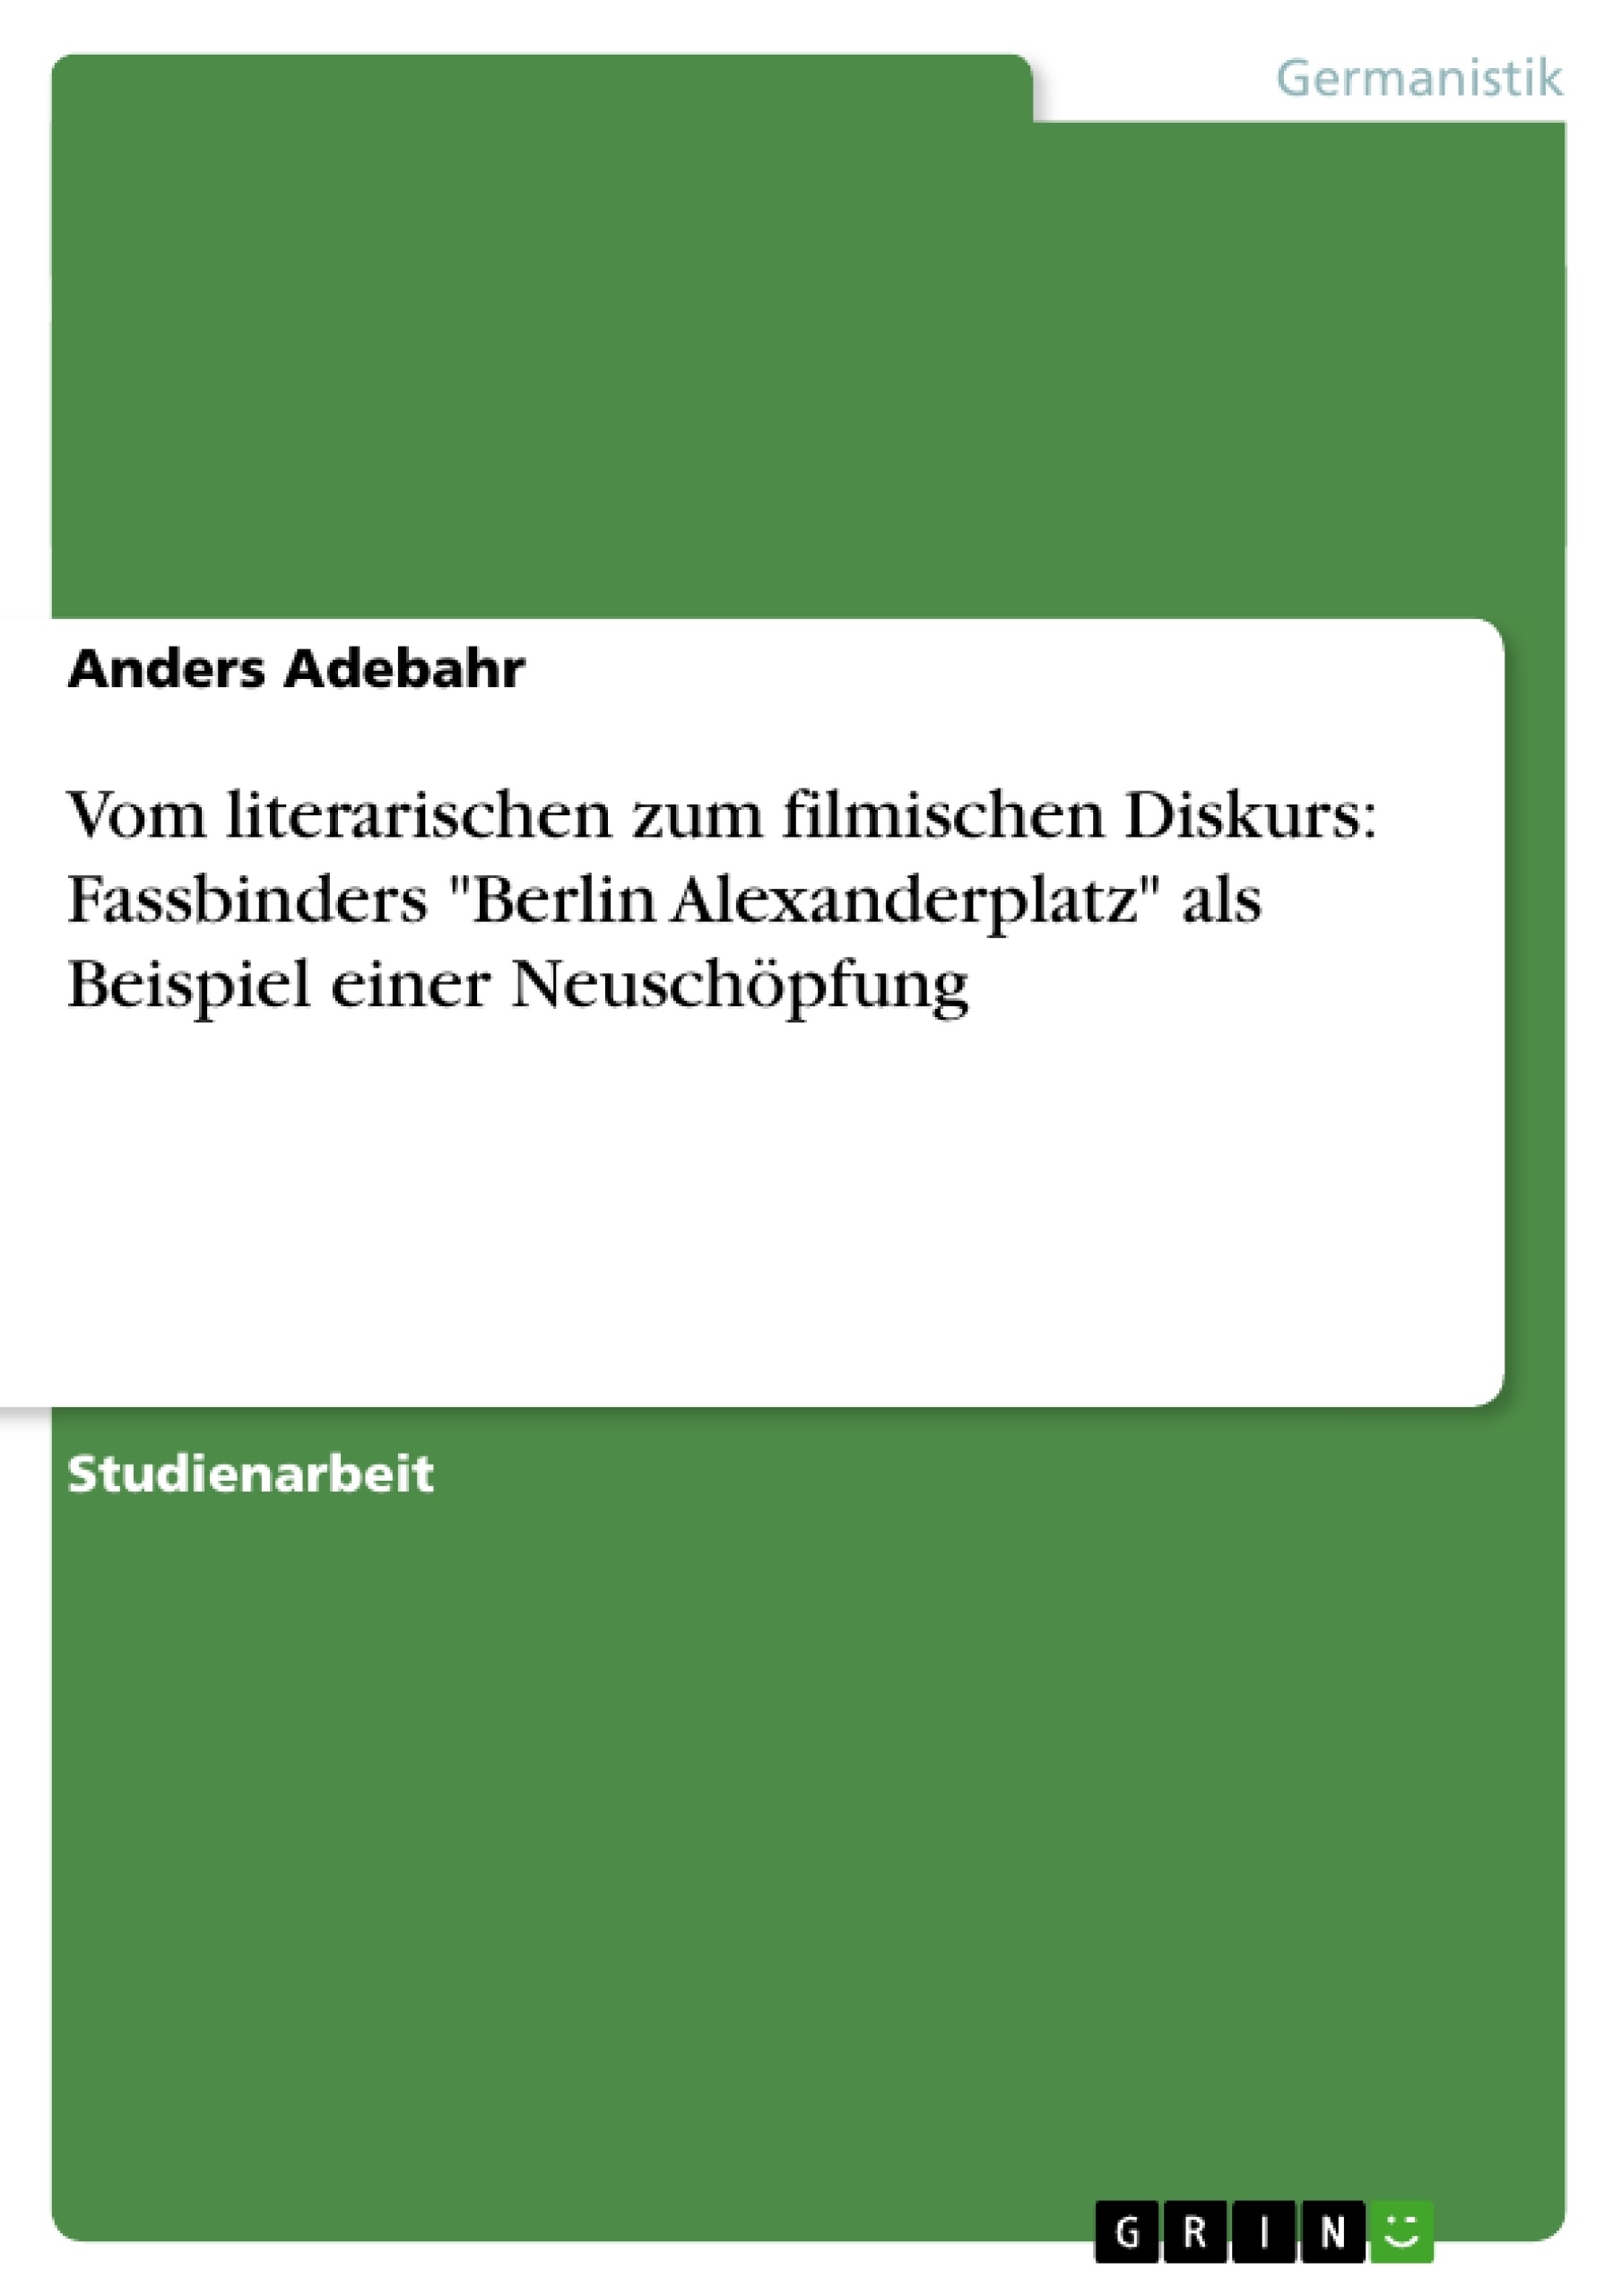 Titre: Vom literarischen zum filmischen Diskurs: Fassbinders "Berlin Alexanderplatz" als Beispiel einer Neuschöpfung